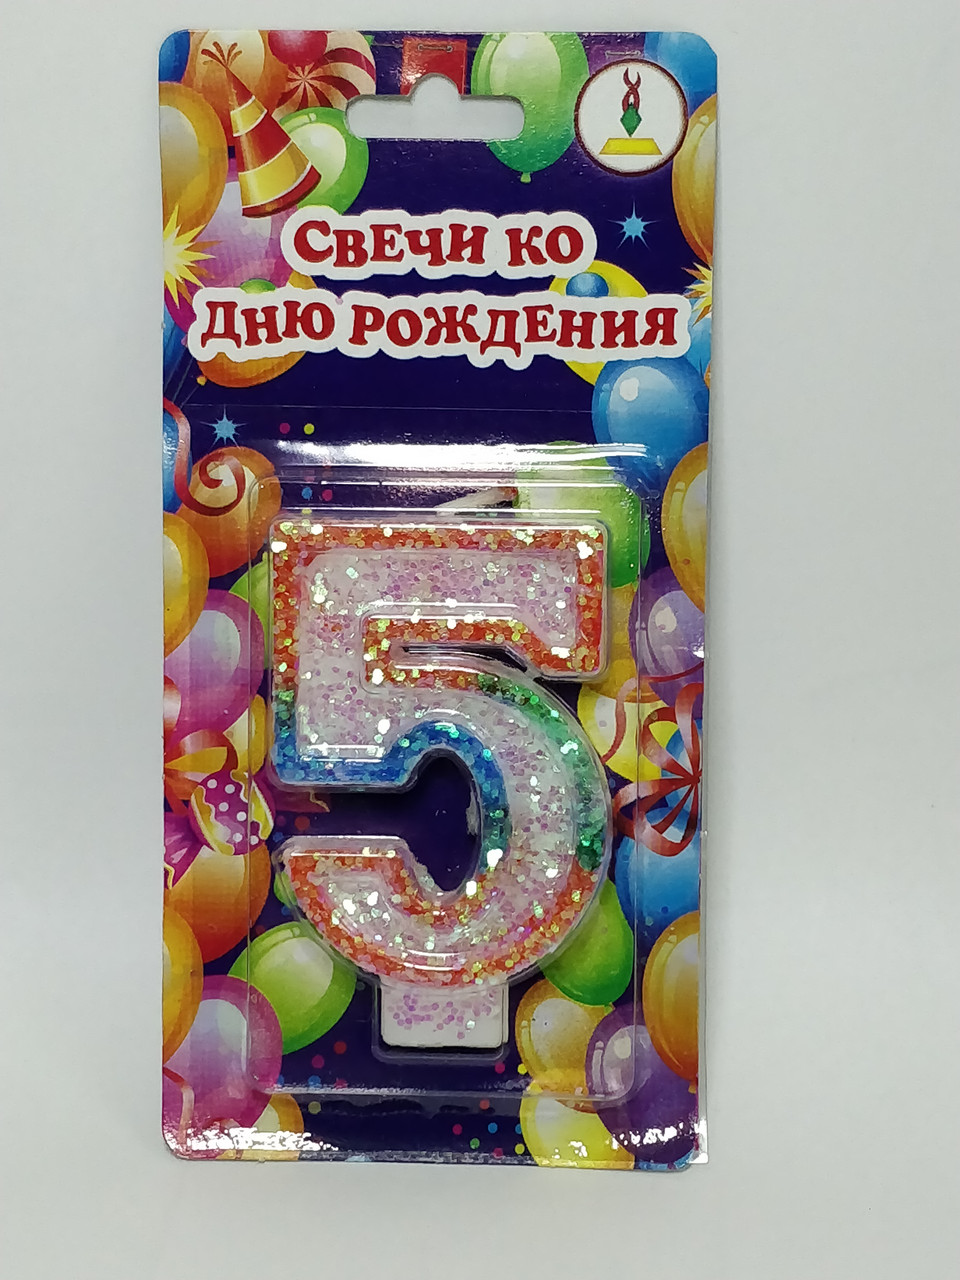 Свічки до дня народження цифра "5" висота 7 см із кольоровою окантовкою